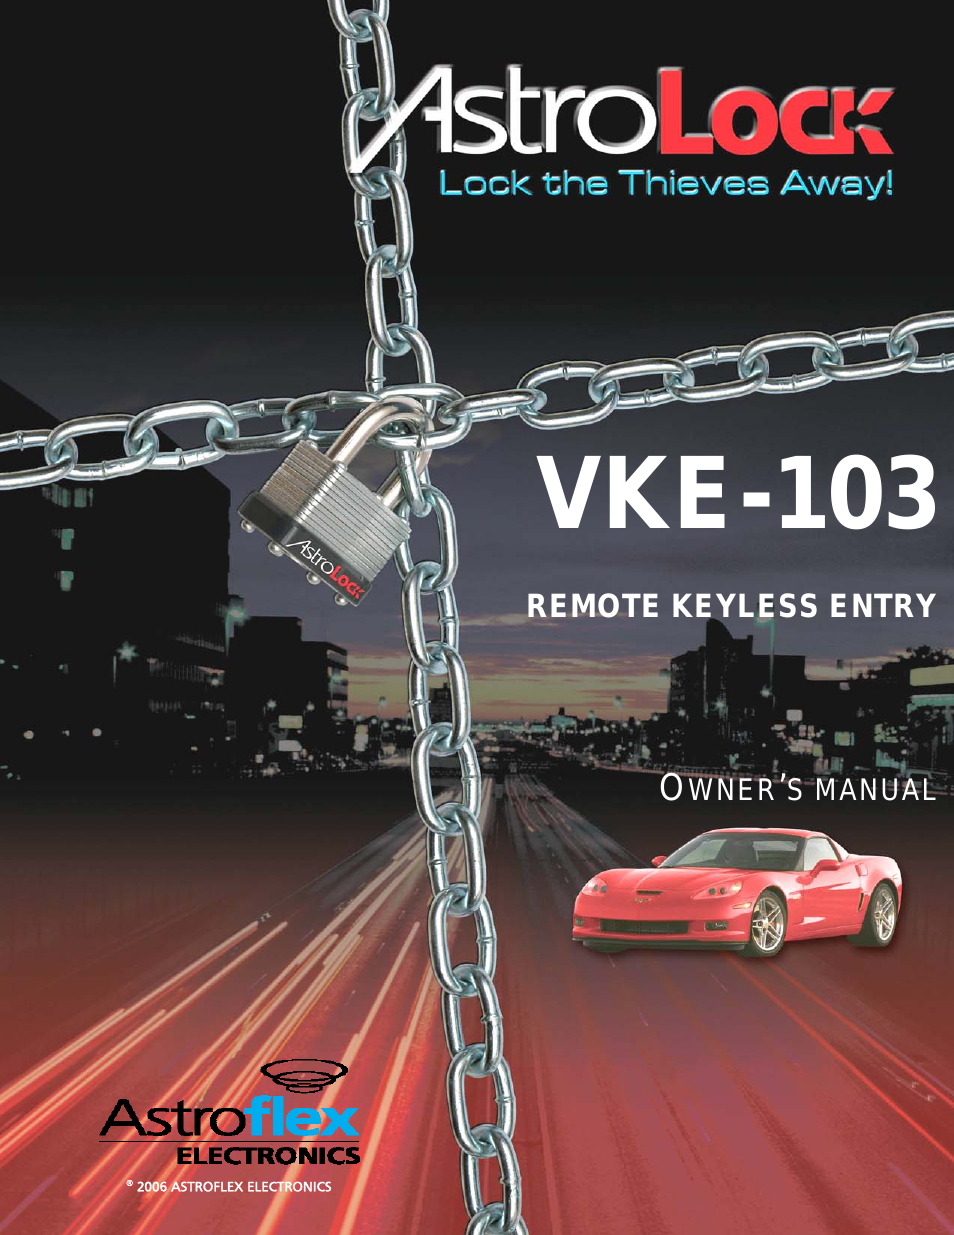 VKE-103